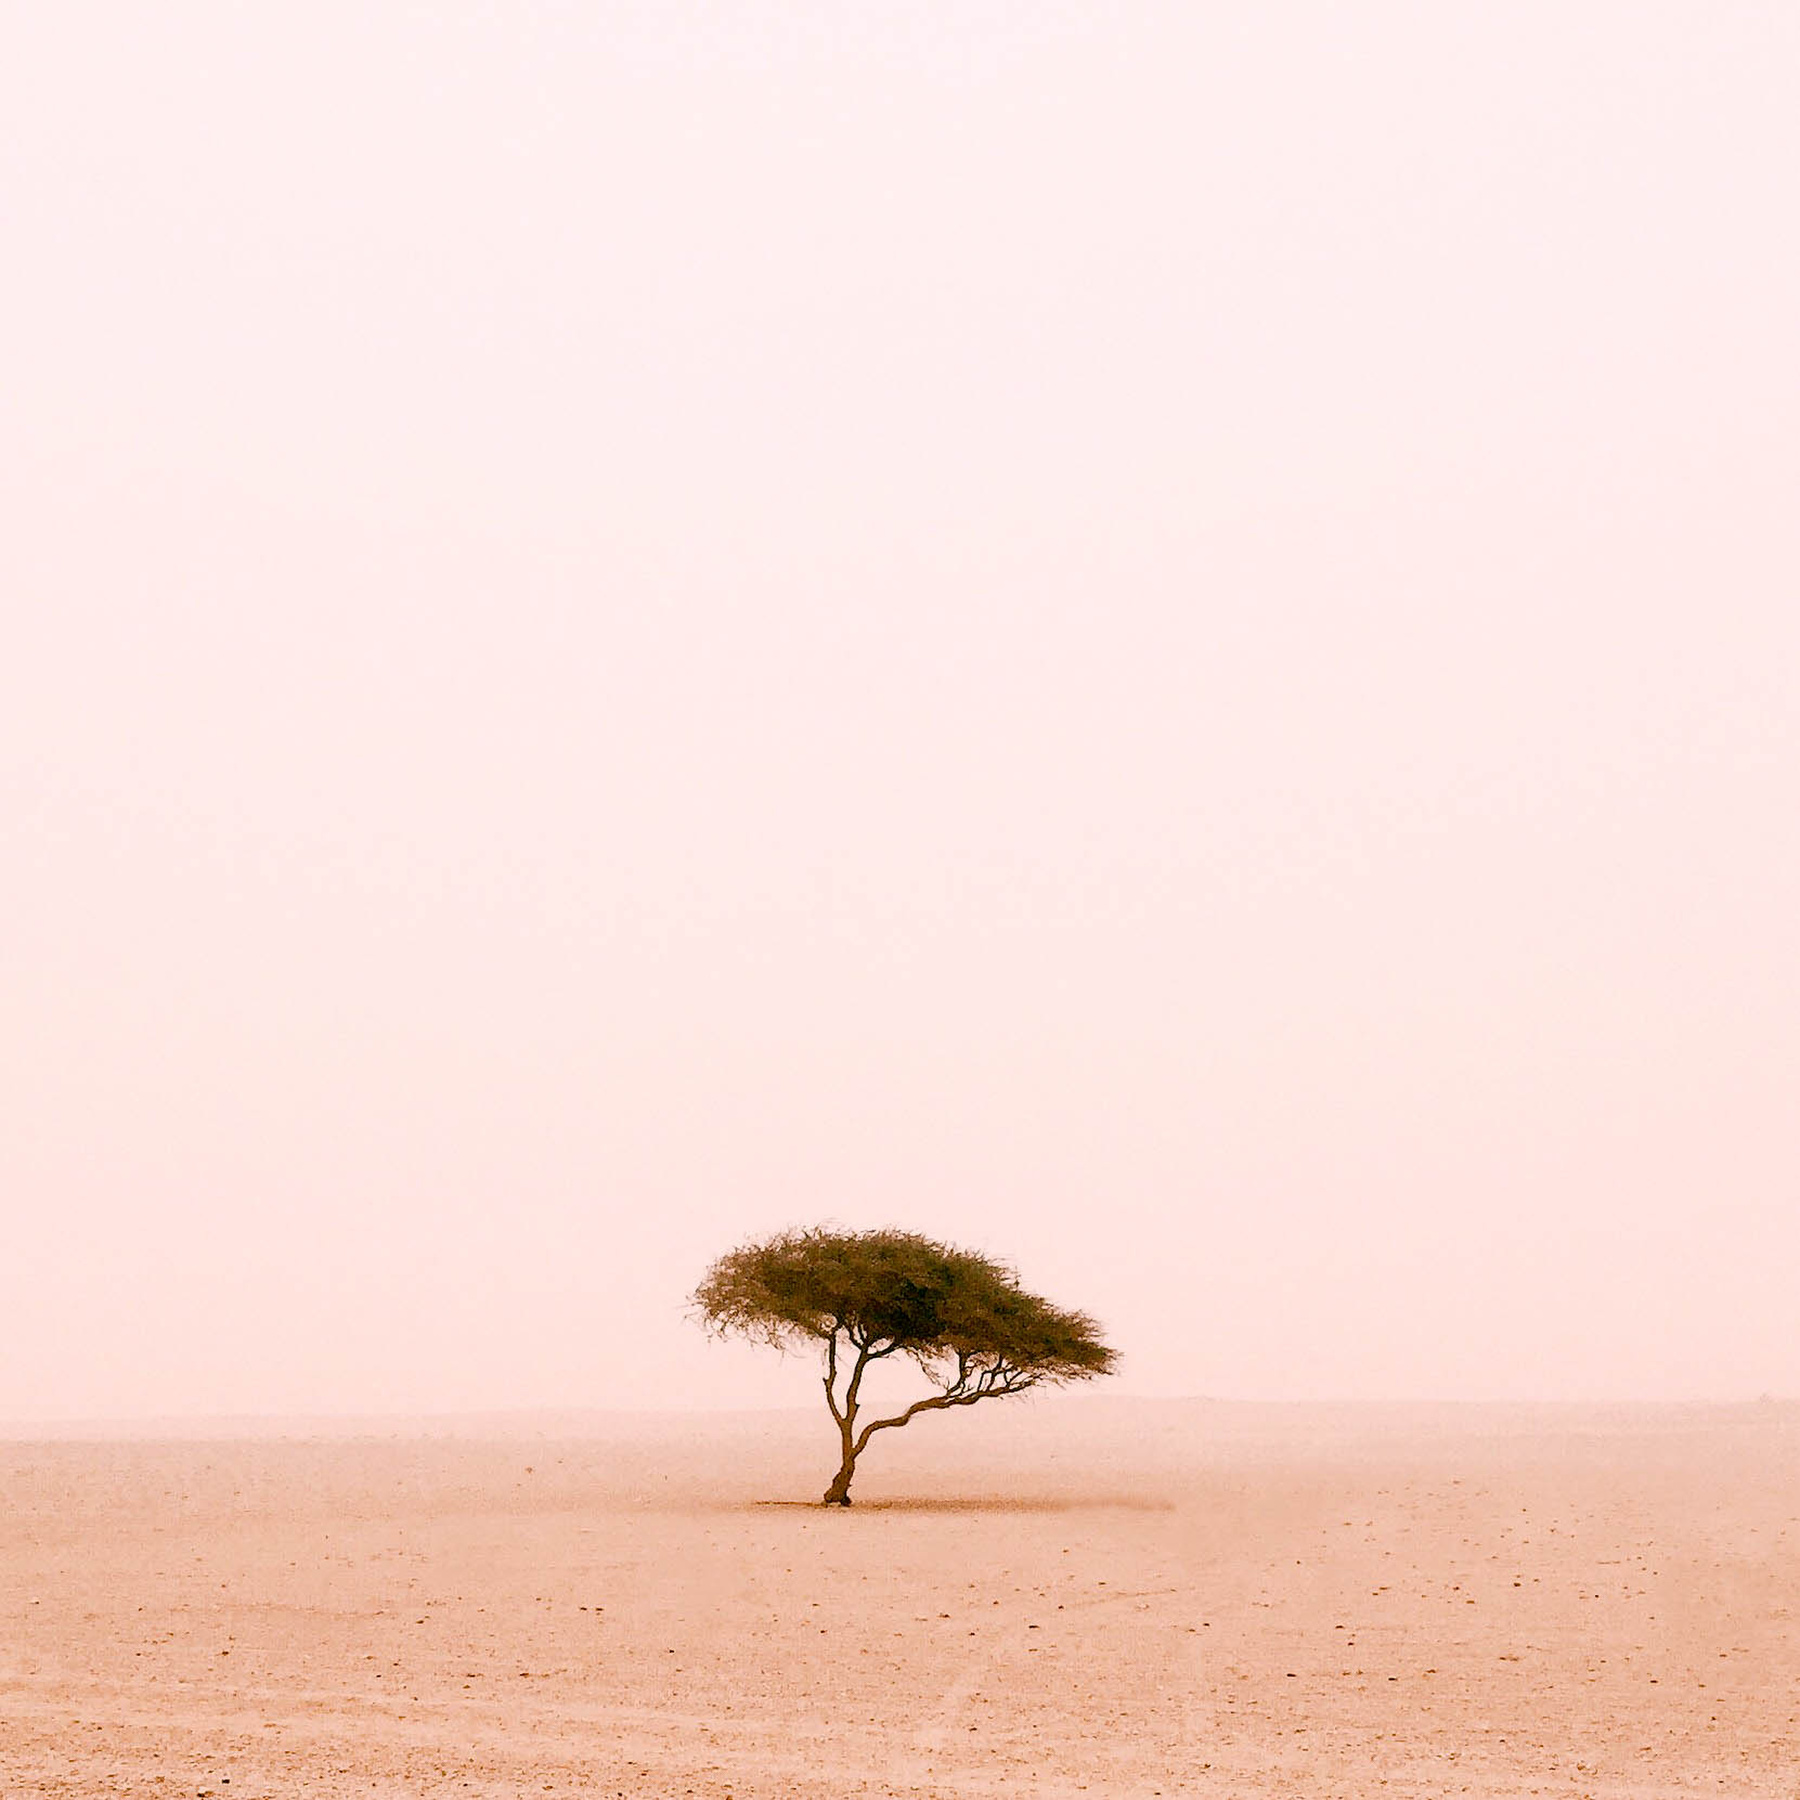 Fák kategória, I. hely - Magányos fa a sivatagban, Szaud Arábia